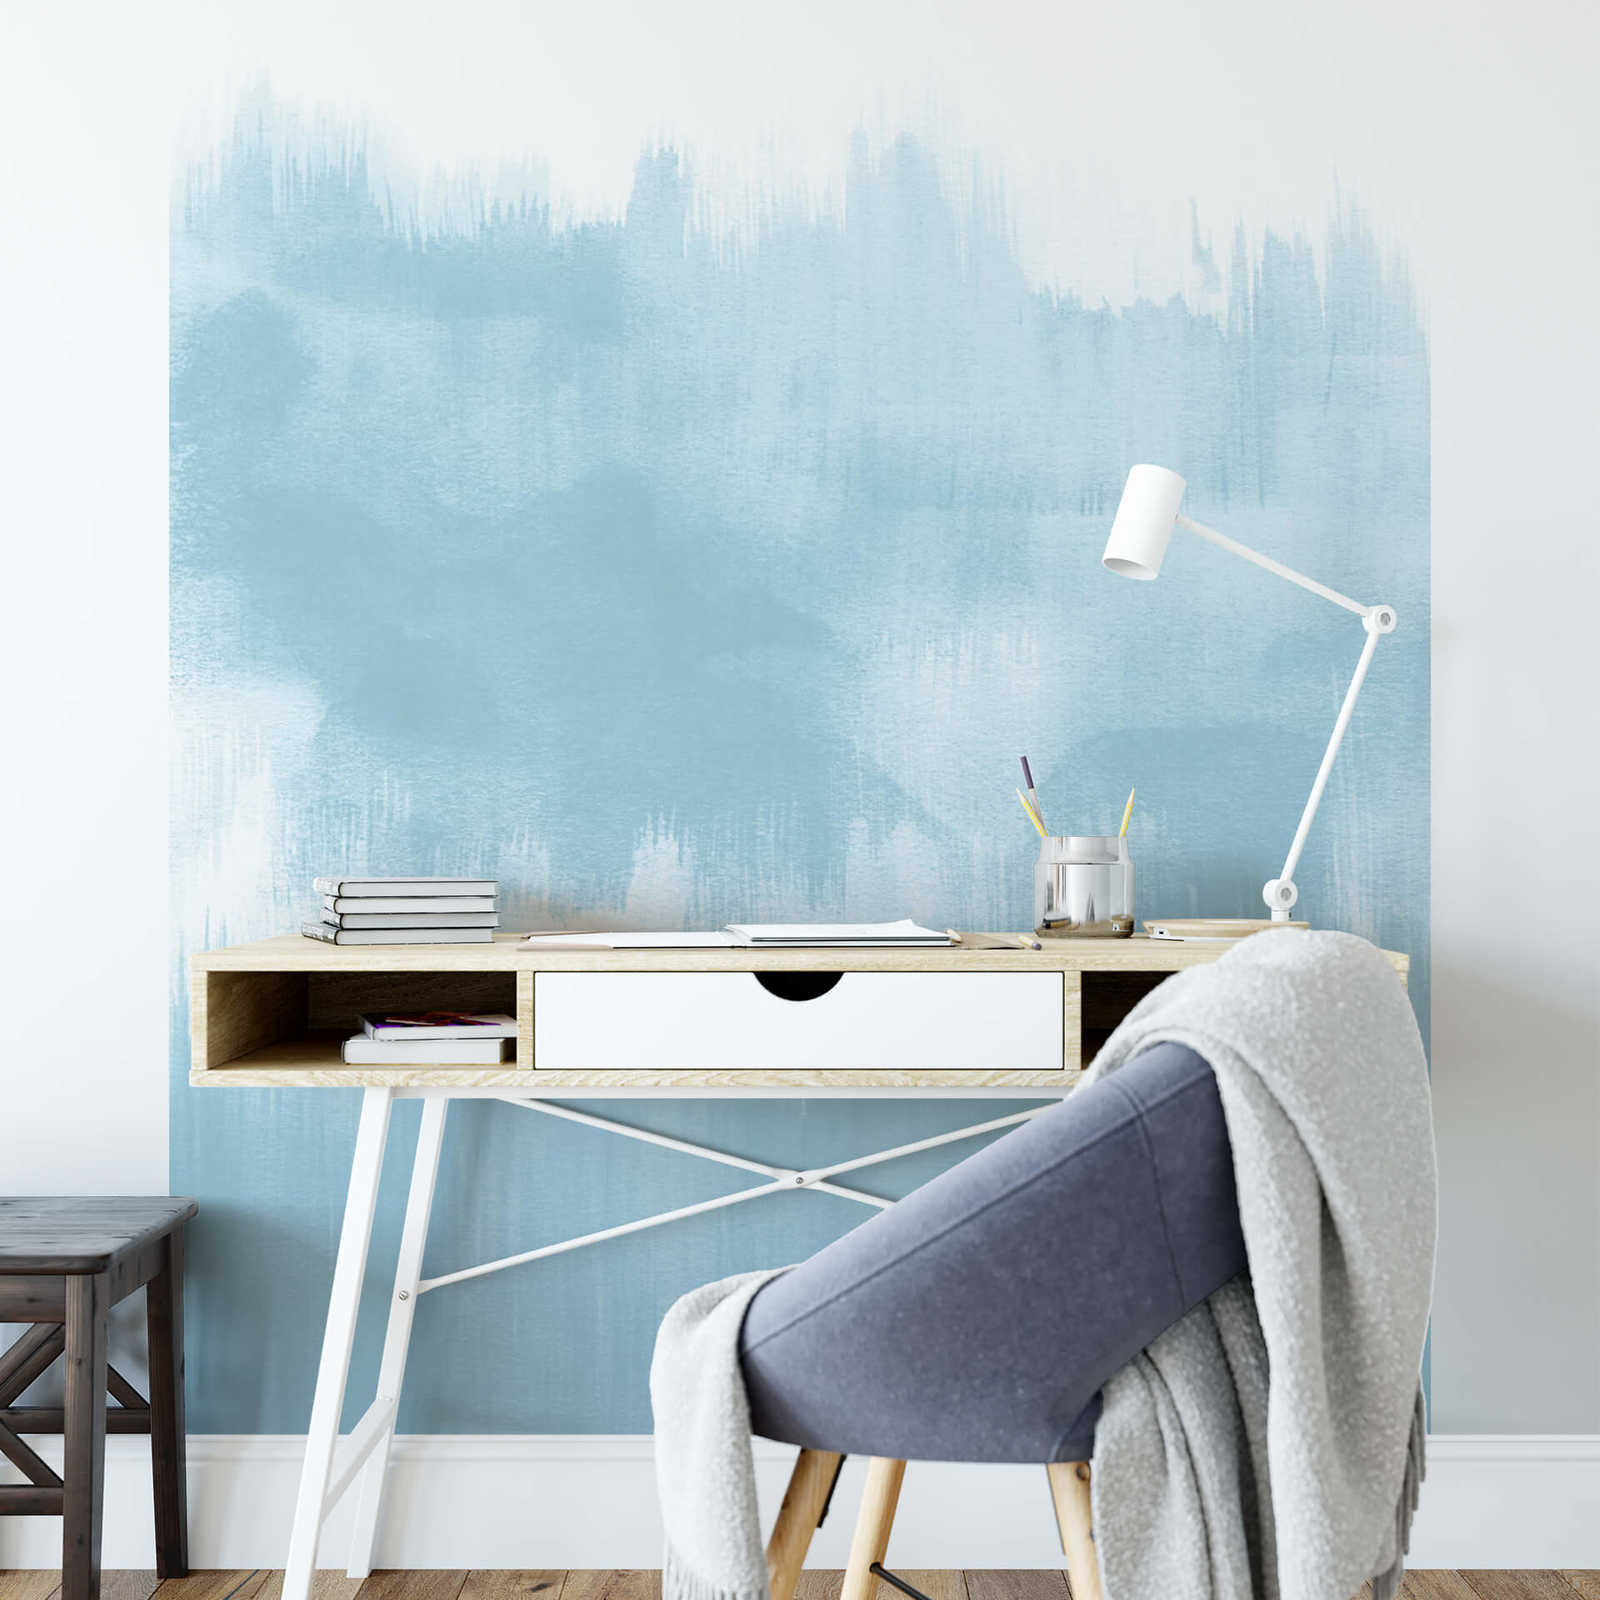             Photo wallpaper narrow brush strokes baby blue
        